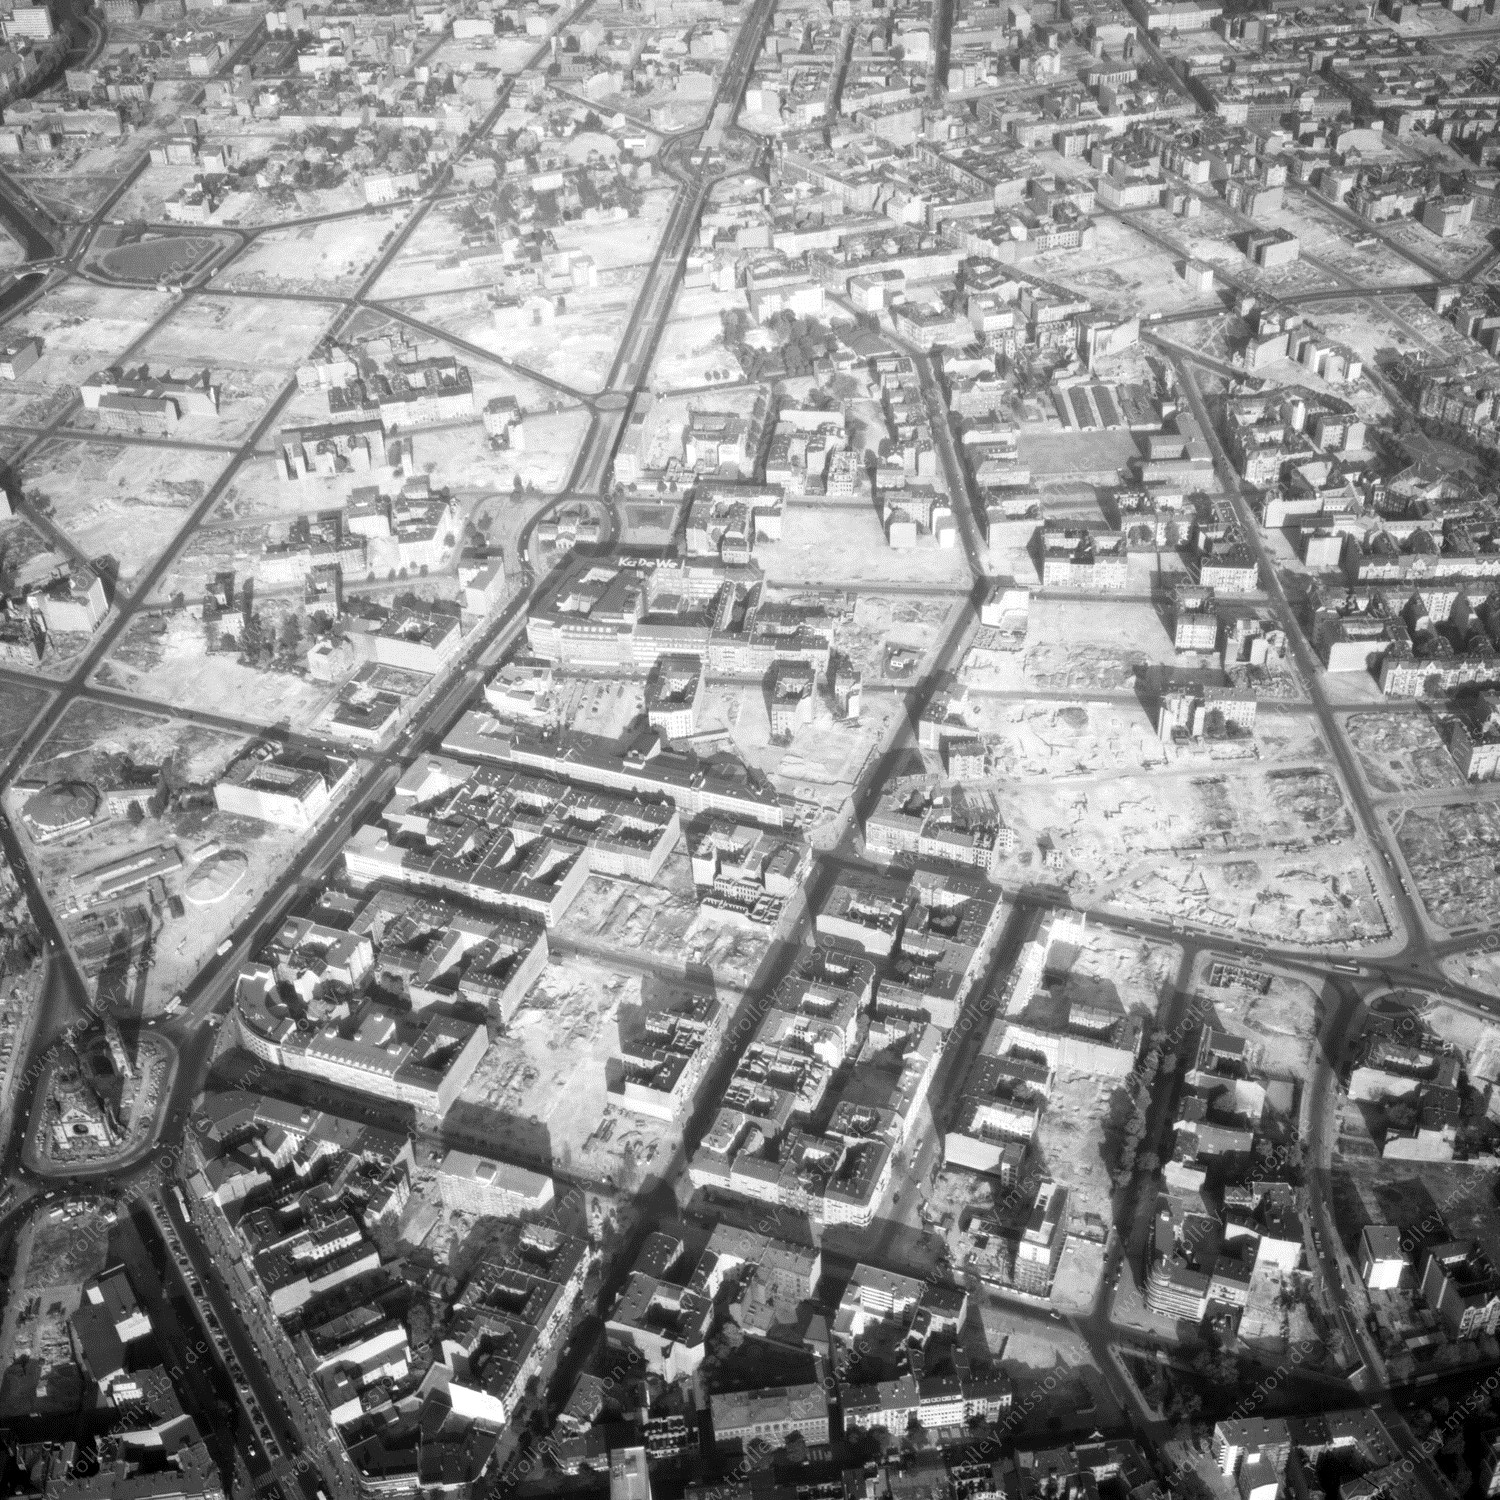 Alte Fotos und Luftbilder von Berlin - Luftbildaufnahme Nr. 11 - Historische Luftaufnahmen von West-Berlin aus dem Jahr 1954 - Flugstrecke Echo